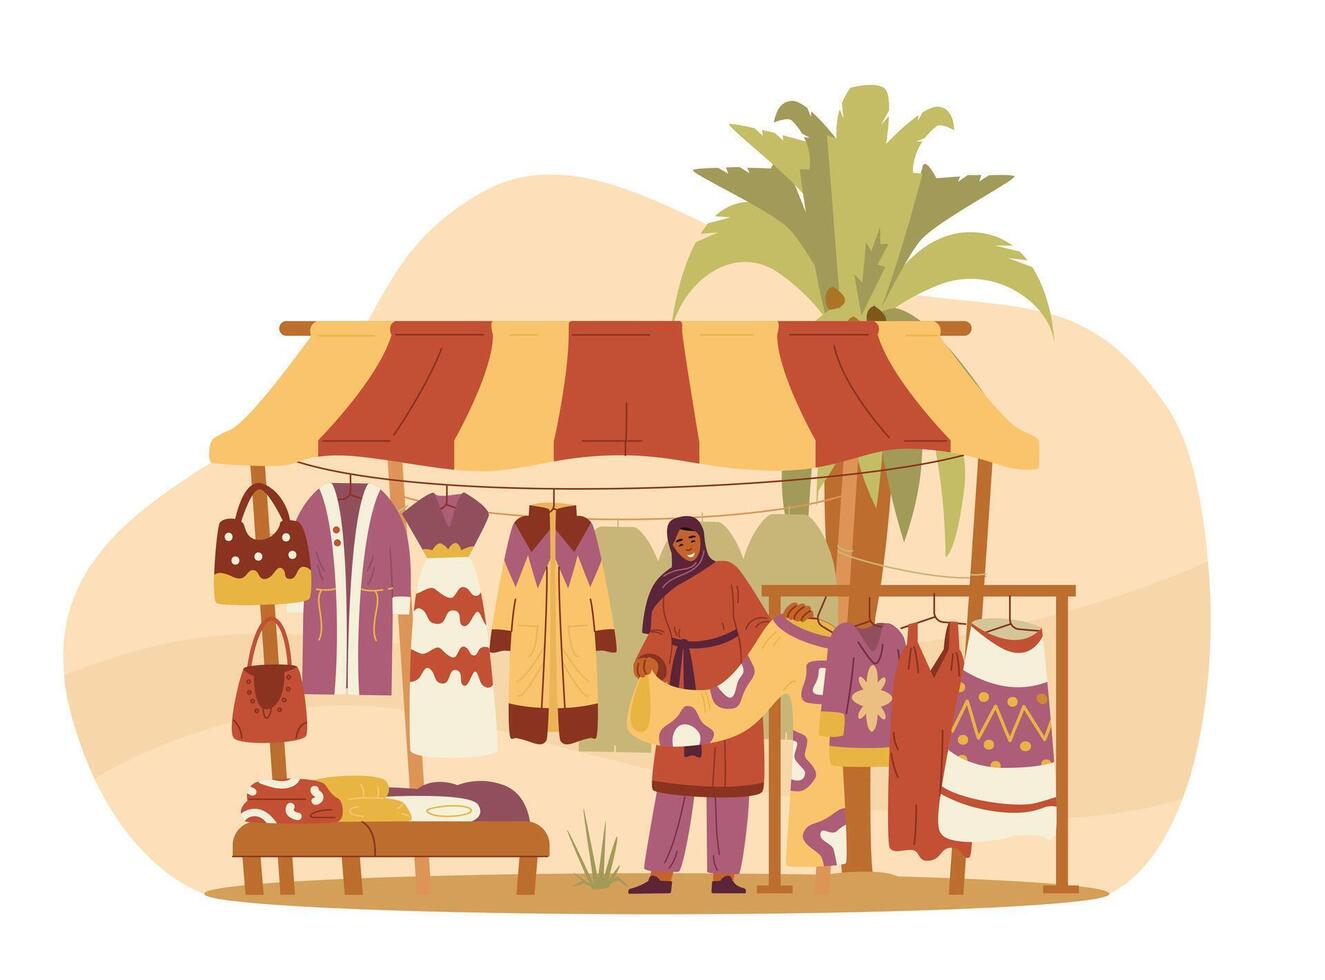 midden- oostelijk traditioneel kleren winkel met vrouw verkoper vlak vector illustratie.